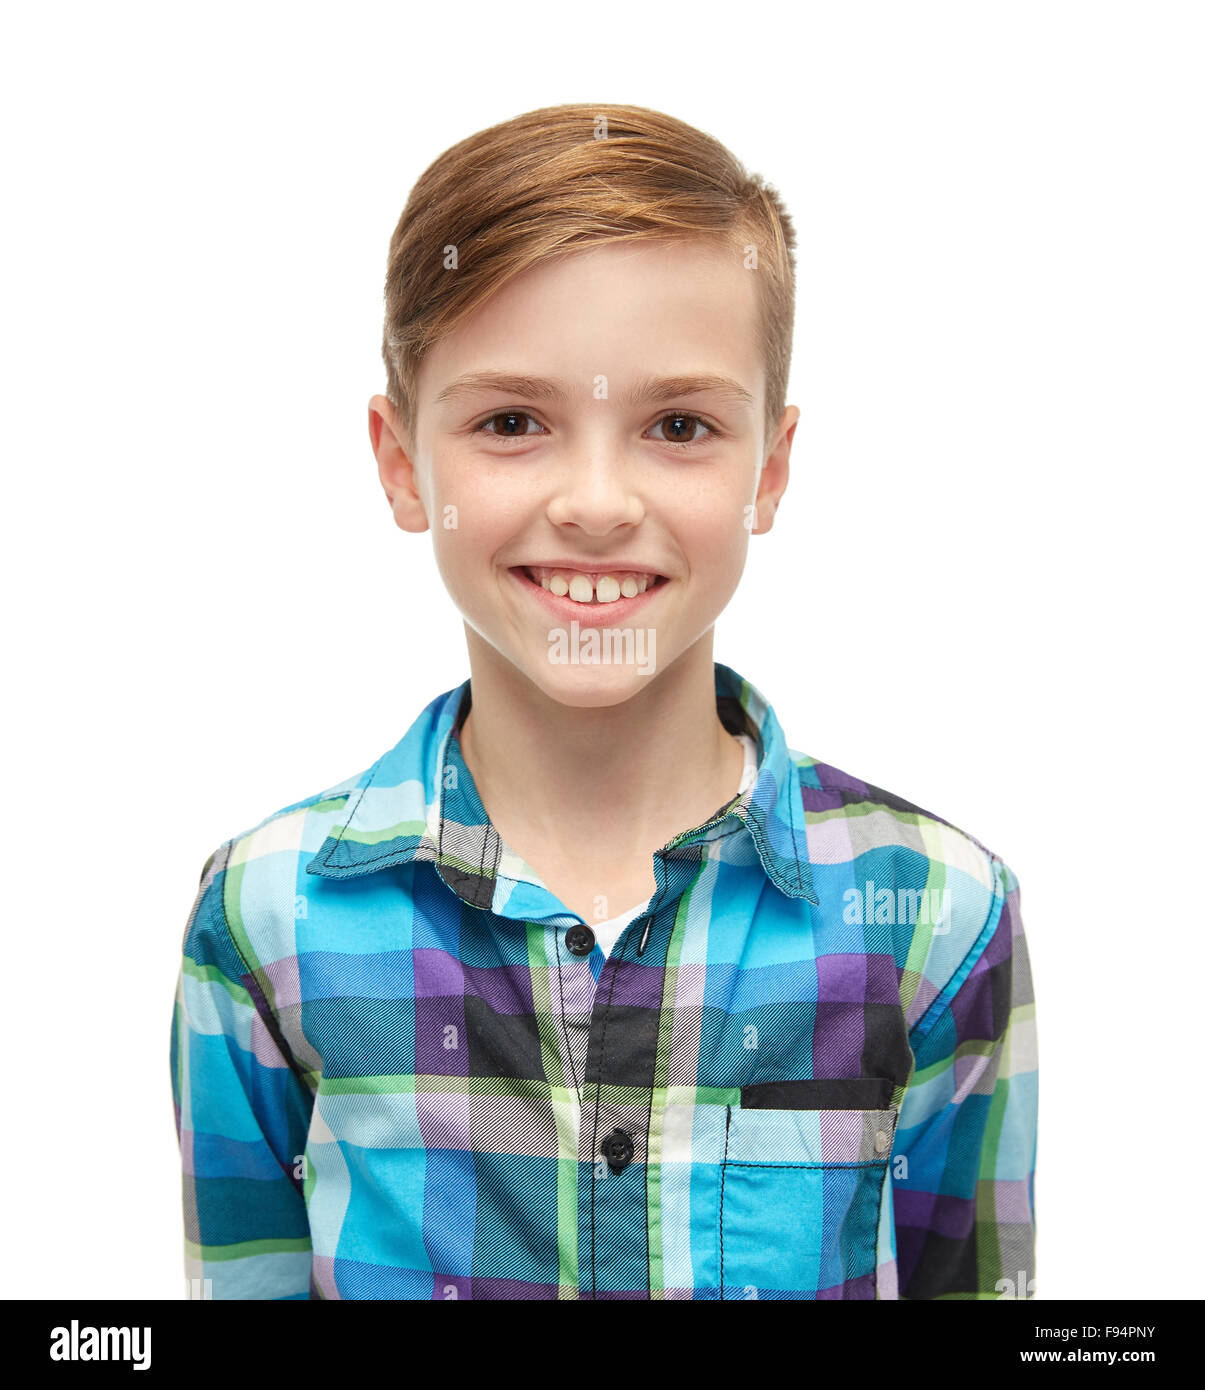 Sonriente muchacho de camisa a cuadros Foto de stock